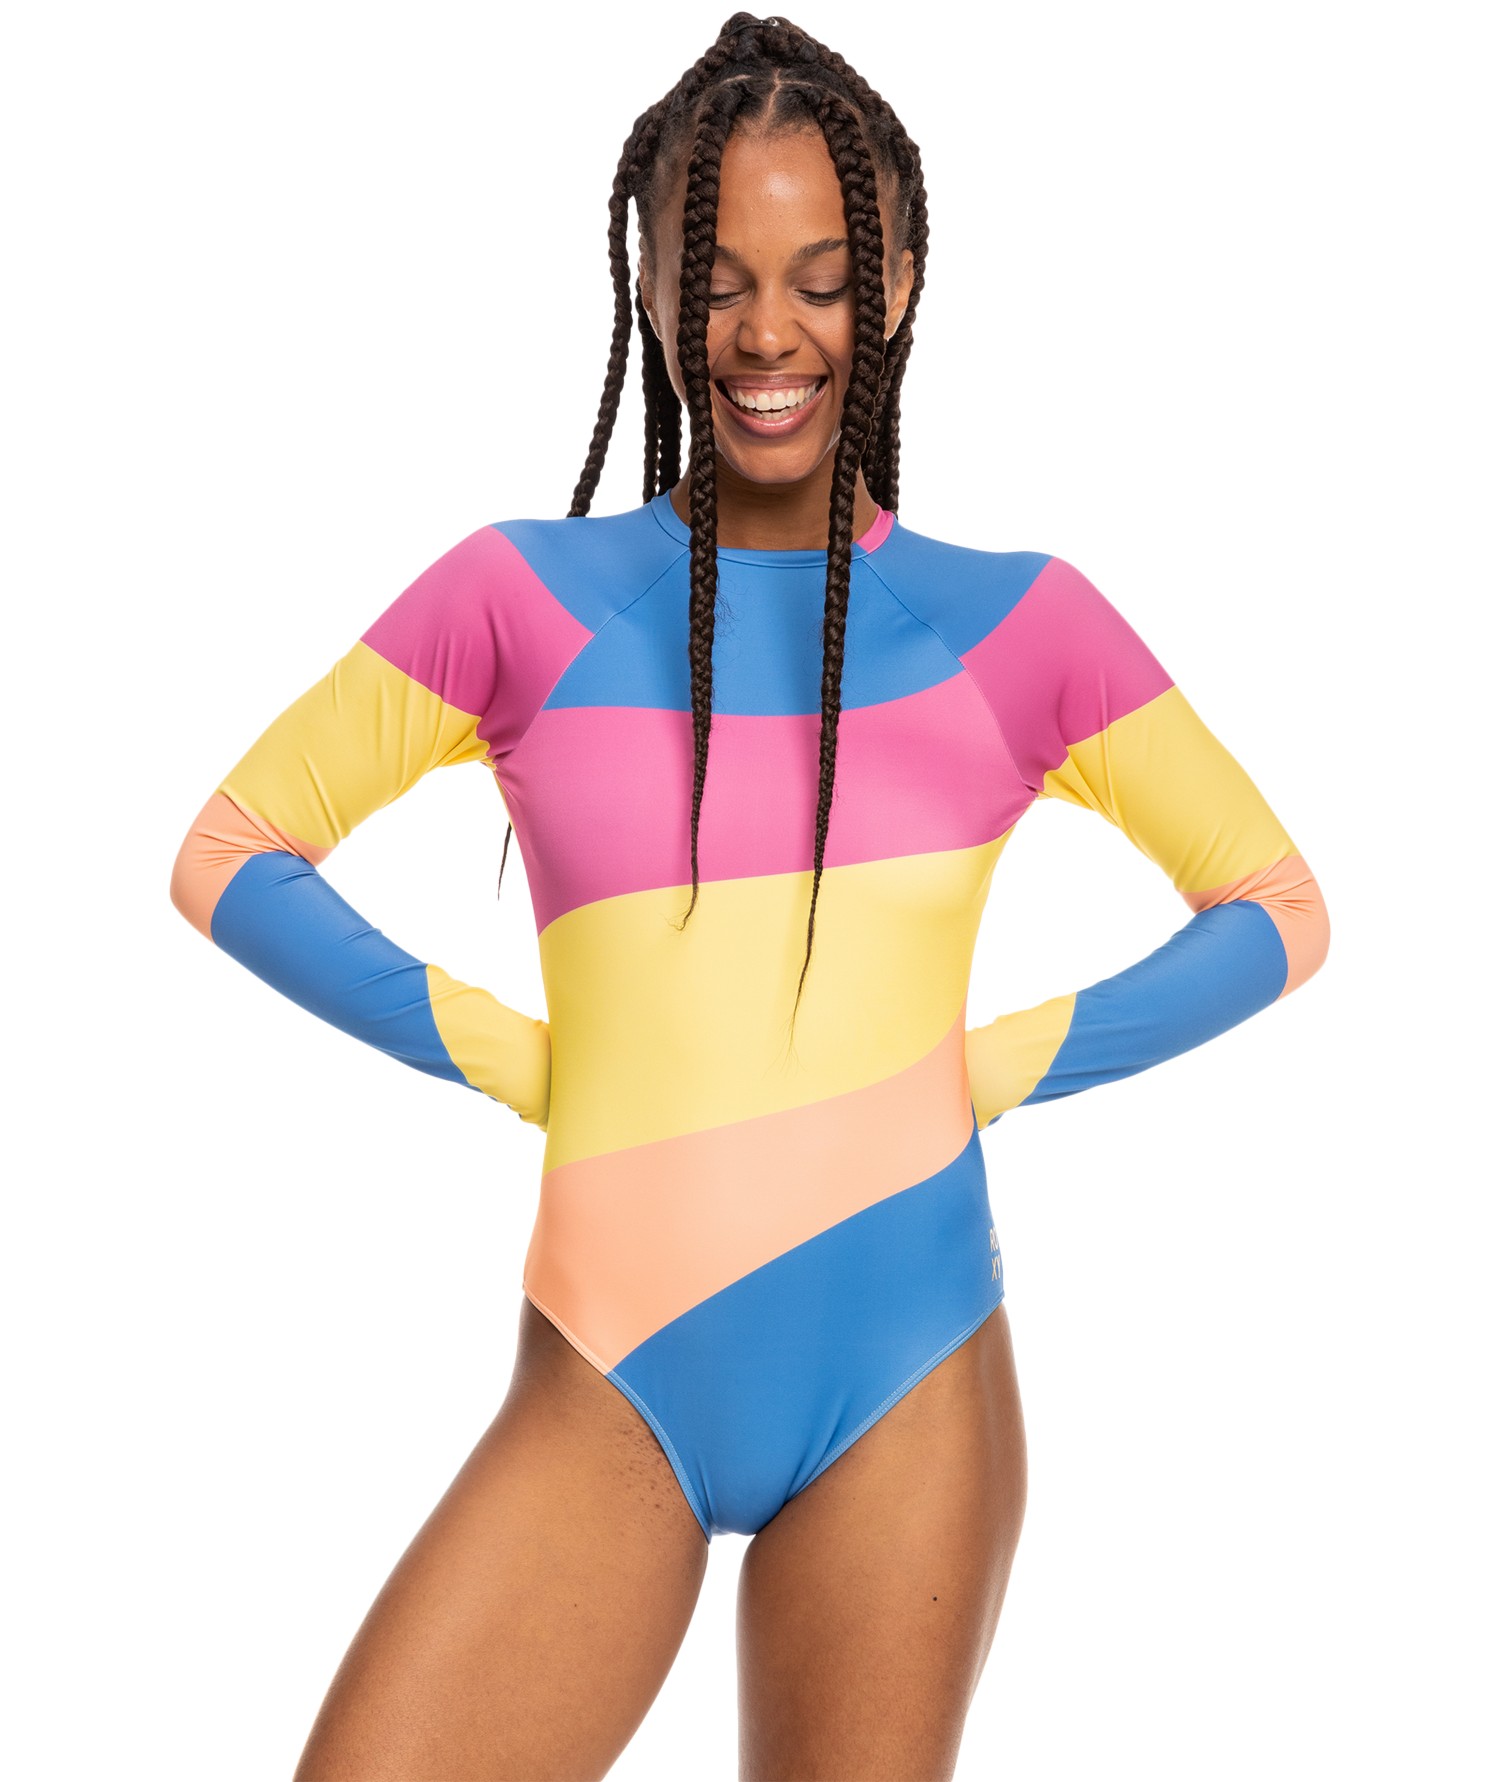 Roxy - UV Badeanzug für Damen - Pop Surf mit offenem Rücken - Langarm - Regatta